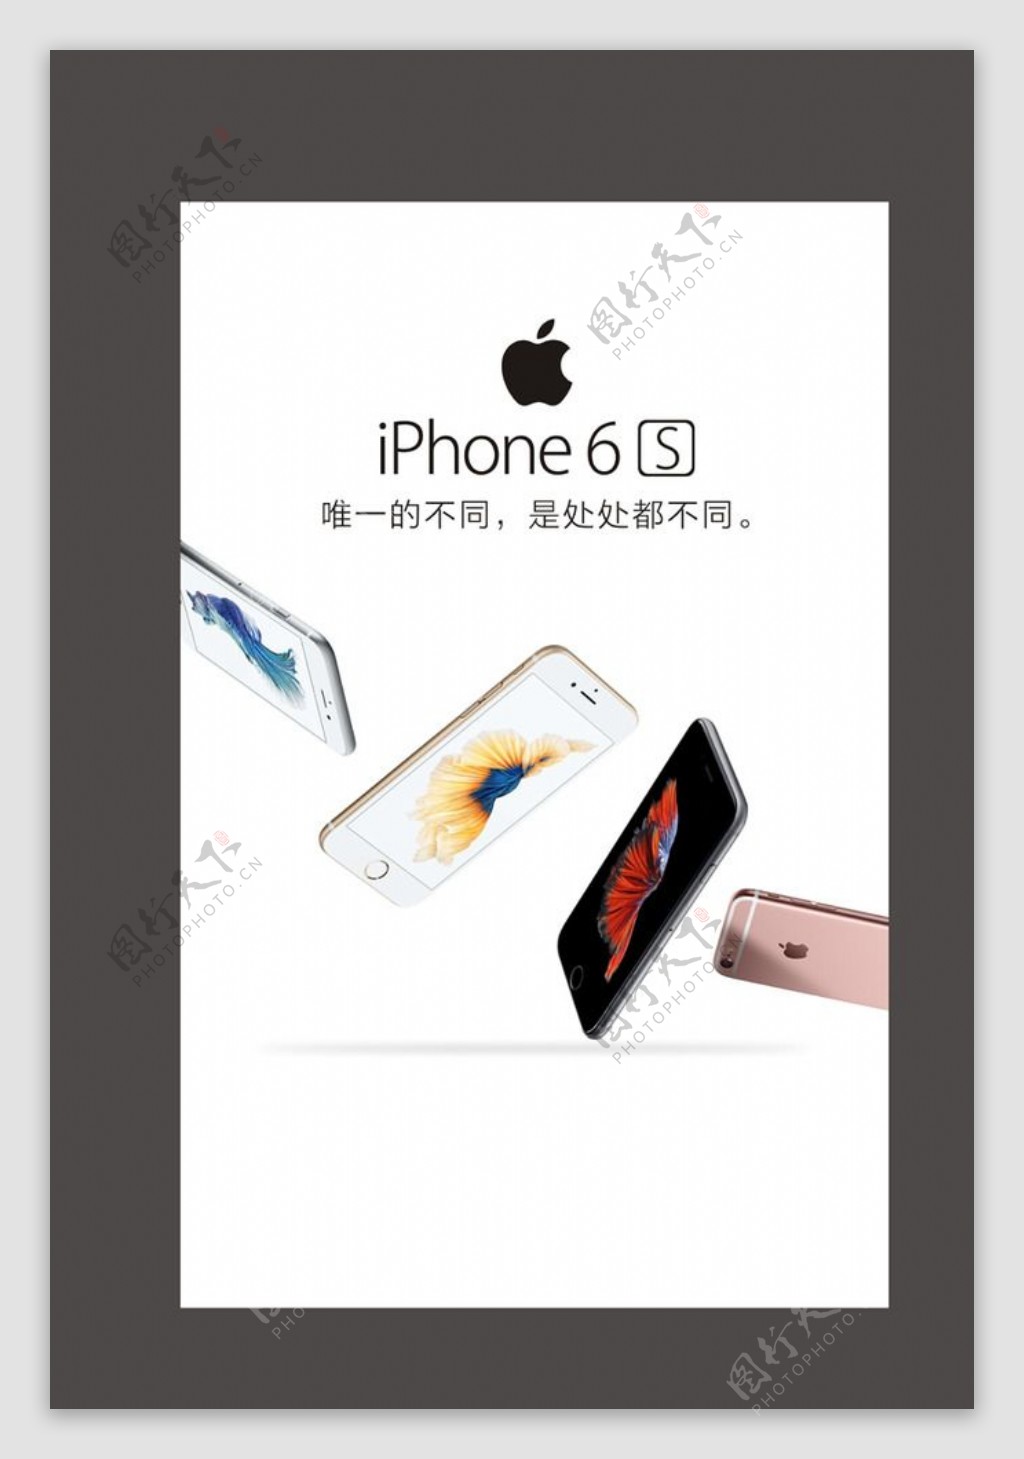 iphone6s苹果6S